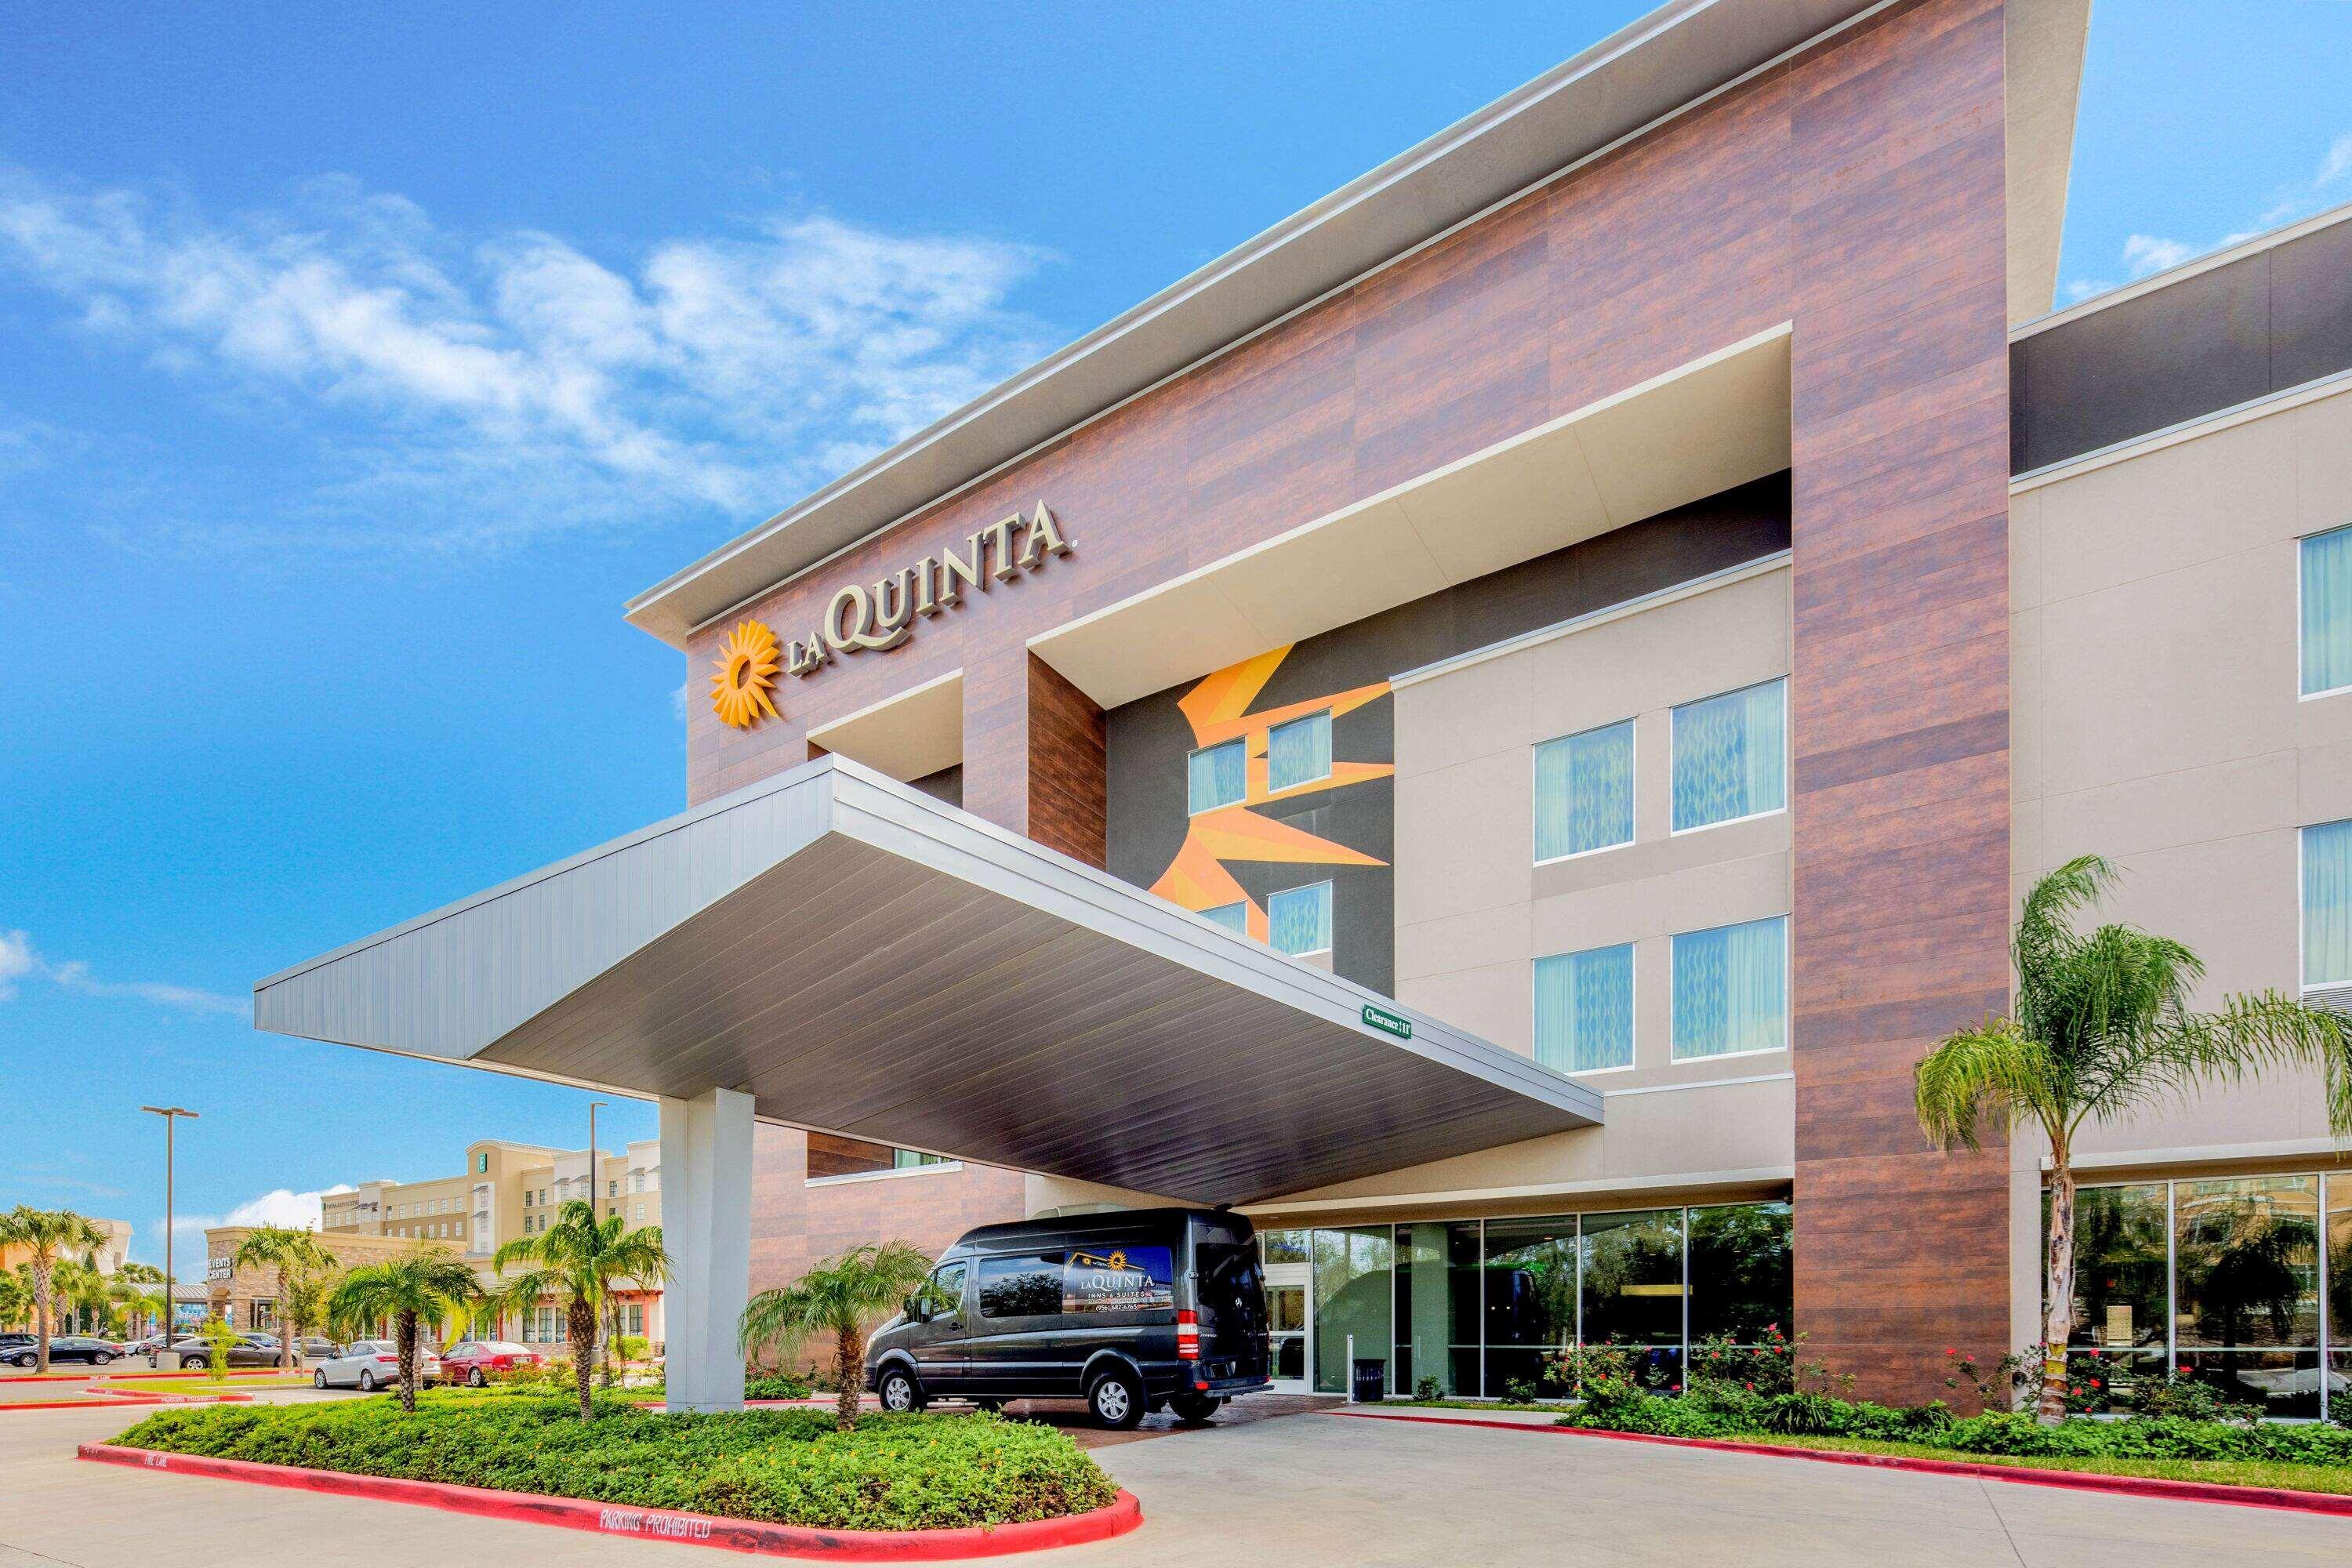 La Quinta Inn & Suites McAllen Convention Center